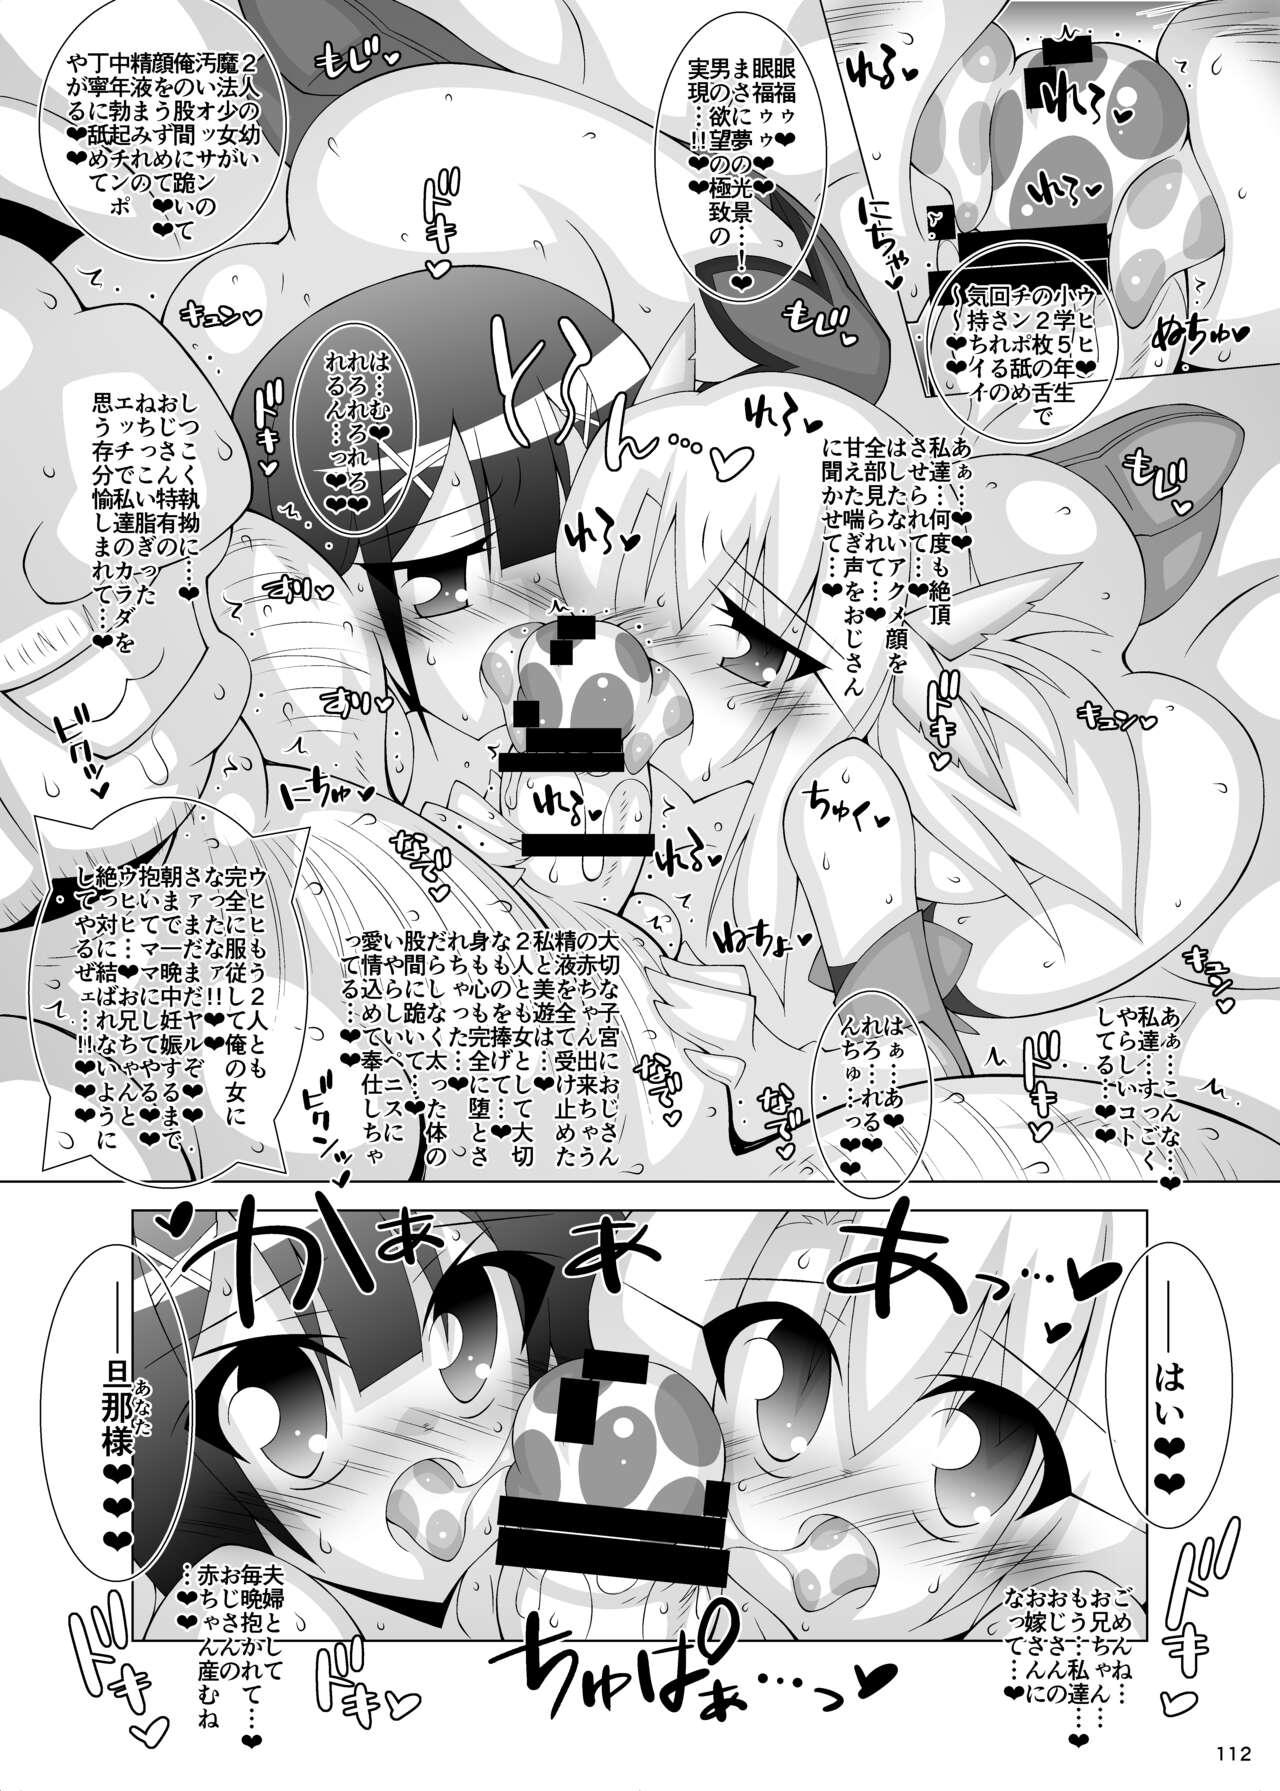 Classy 墮チル魔法少女 - Fate kaleid liner prisma illya Newbie - Page 111